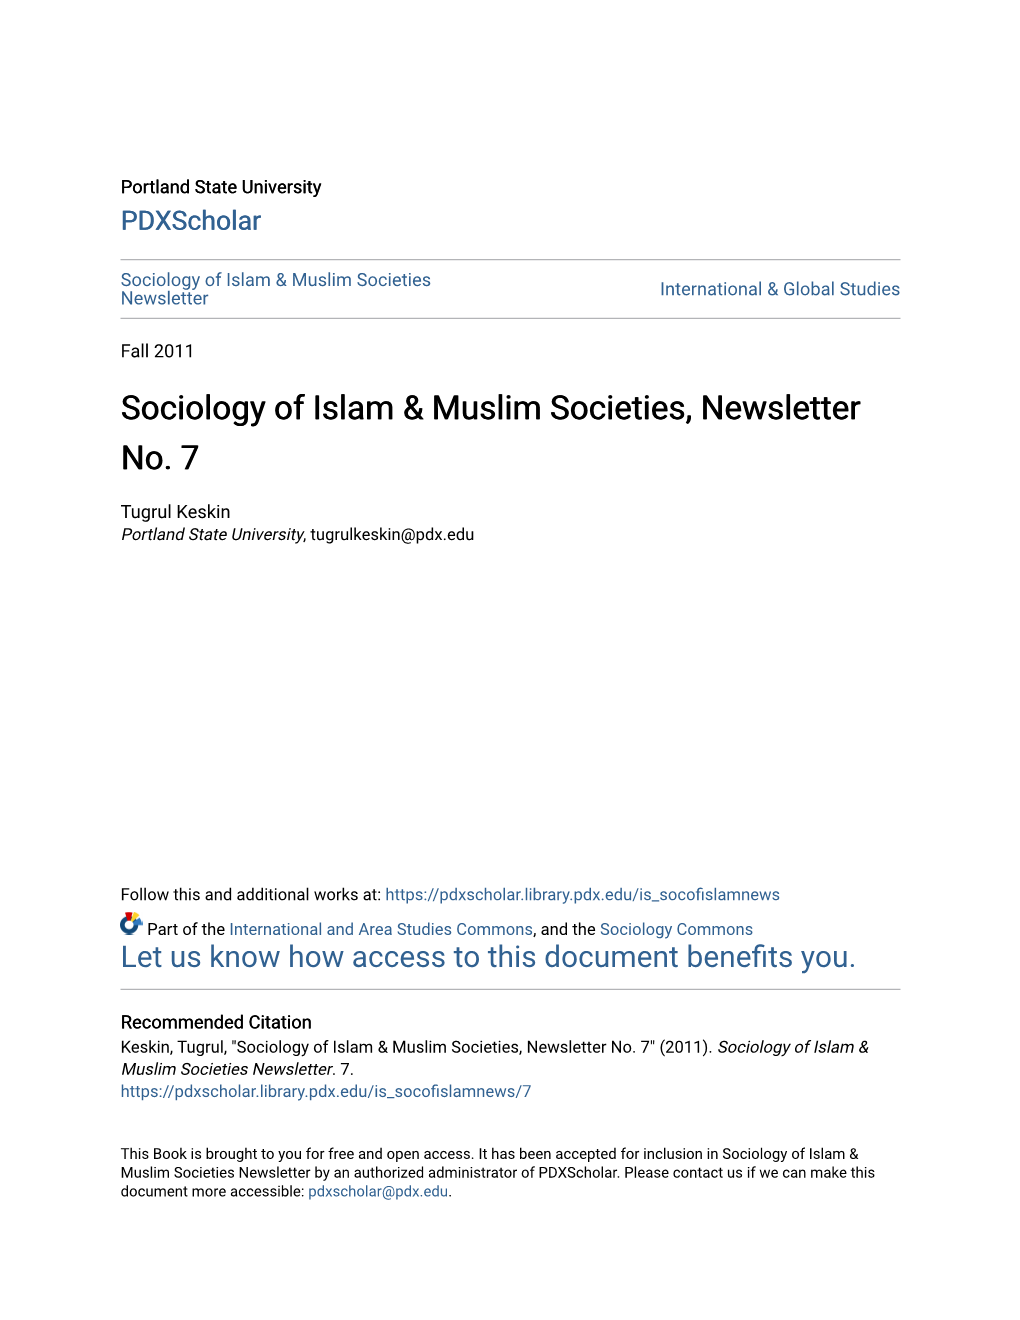 Sociology of Islam & Muslim Societies, Newsletter No. 7